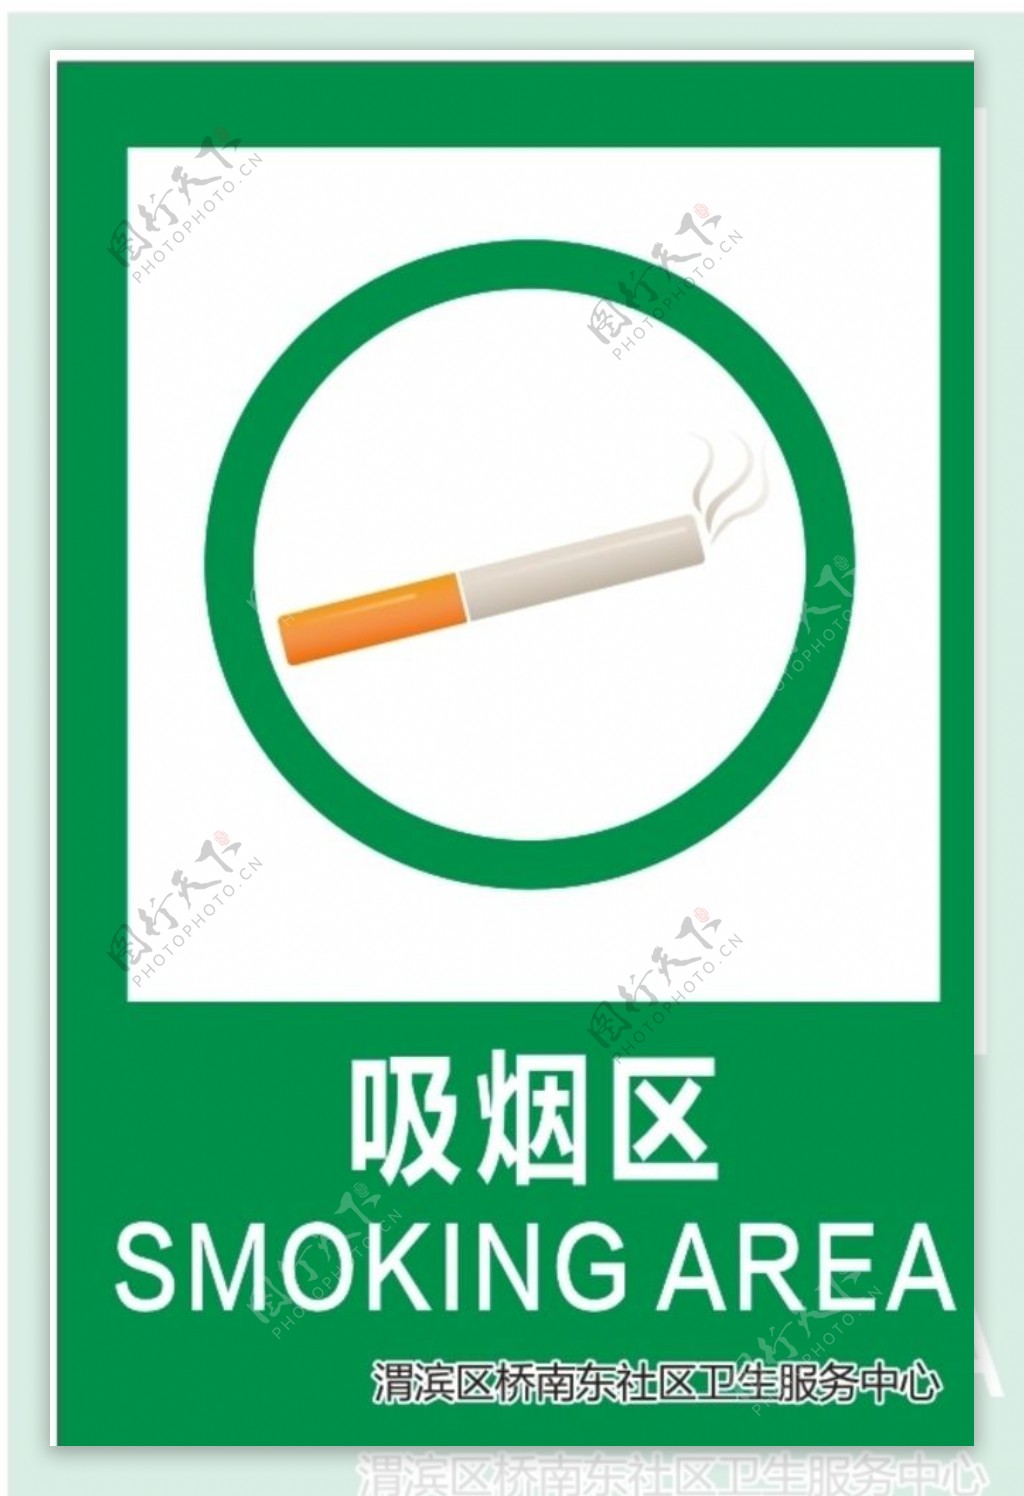 吸烟区请勿吸烟